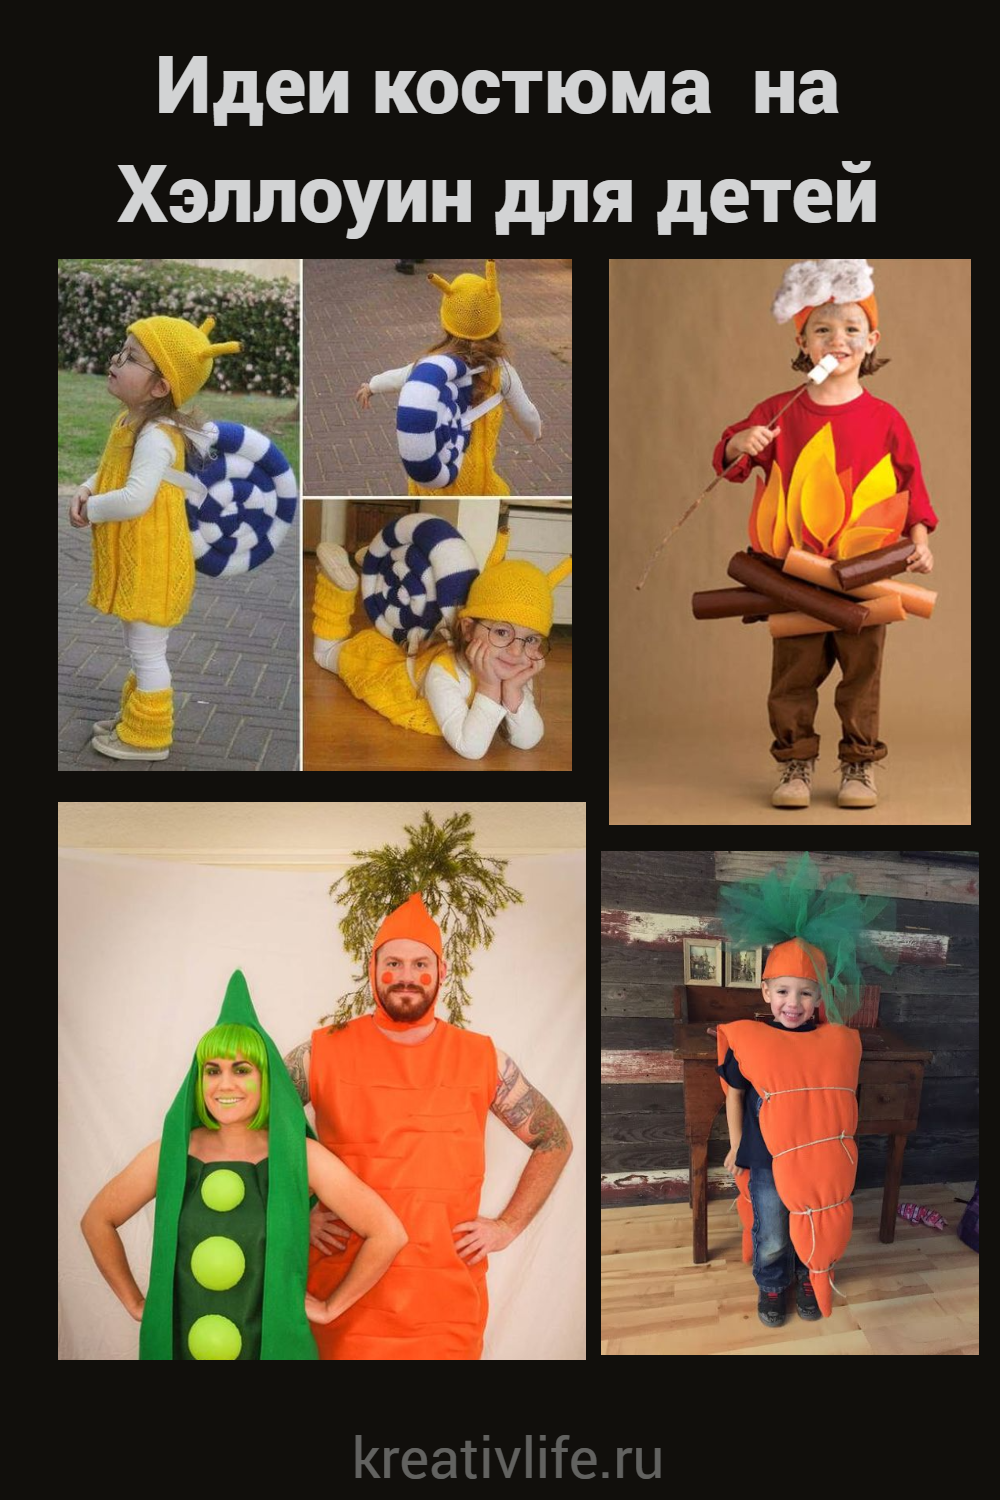 Идеи костюма на Хэллоуин для детей и взрослых 